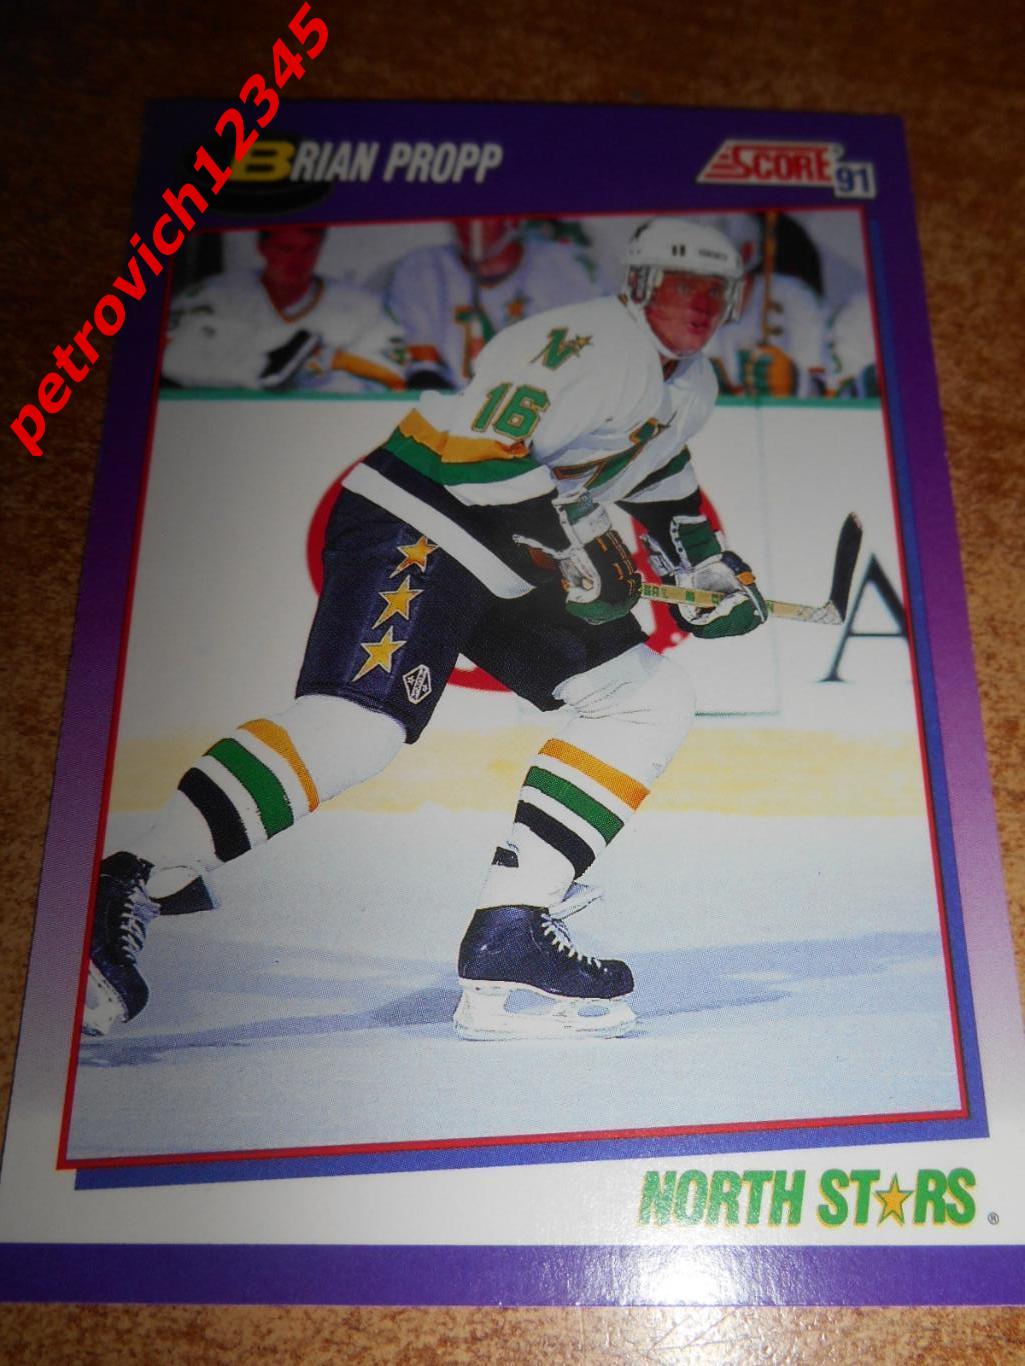 хоккей.карточка = 223 - Brian Propp - Minnesota North Stars